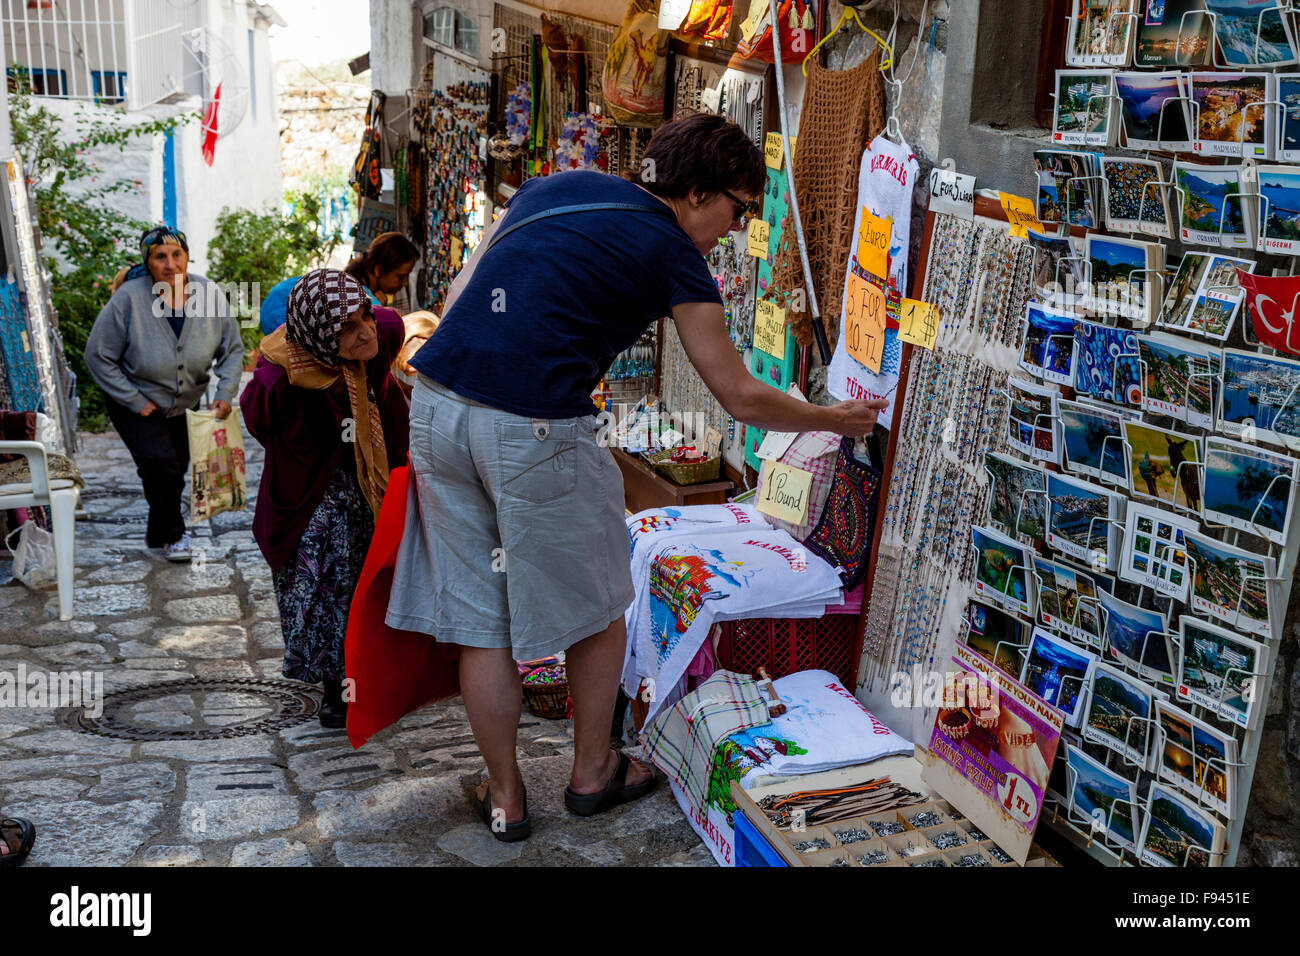 Les touristes d'acheter des souvenirs dans une boutique de cadeaux dans la vieille ville de Marmaris, Province de Mugla, Turquie Banque D'Images